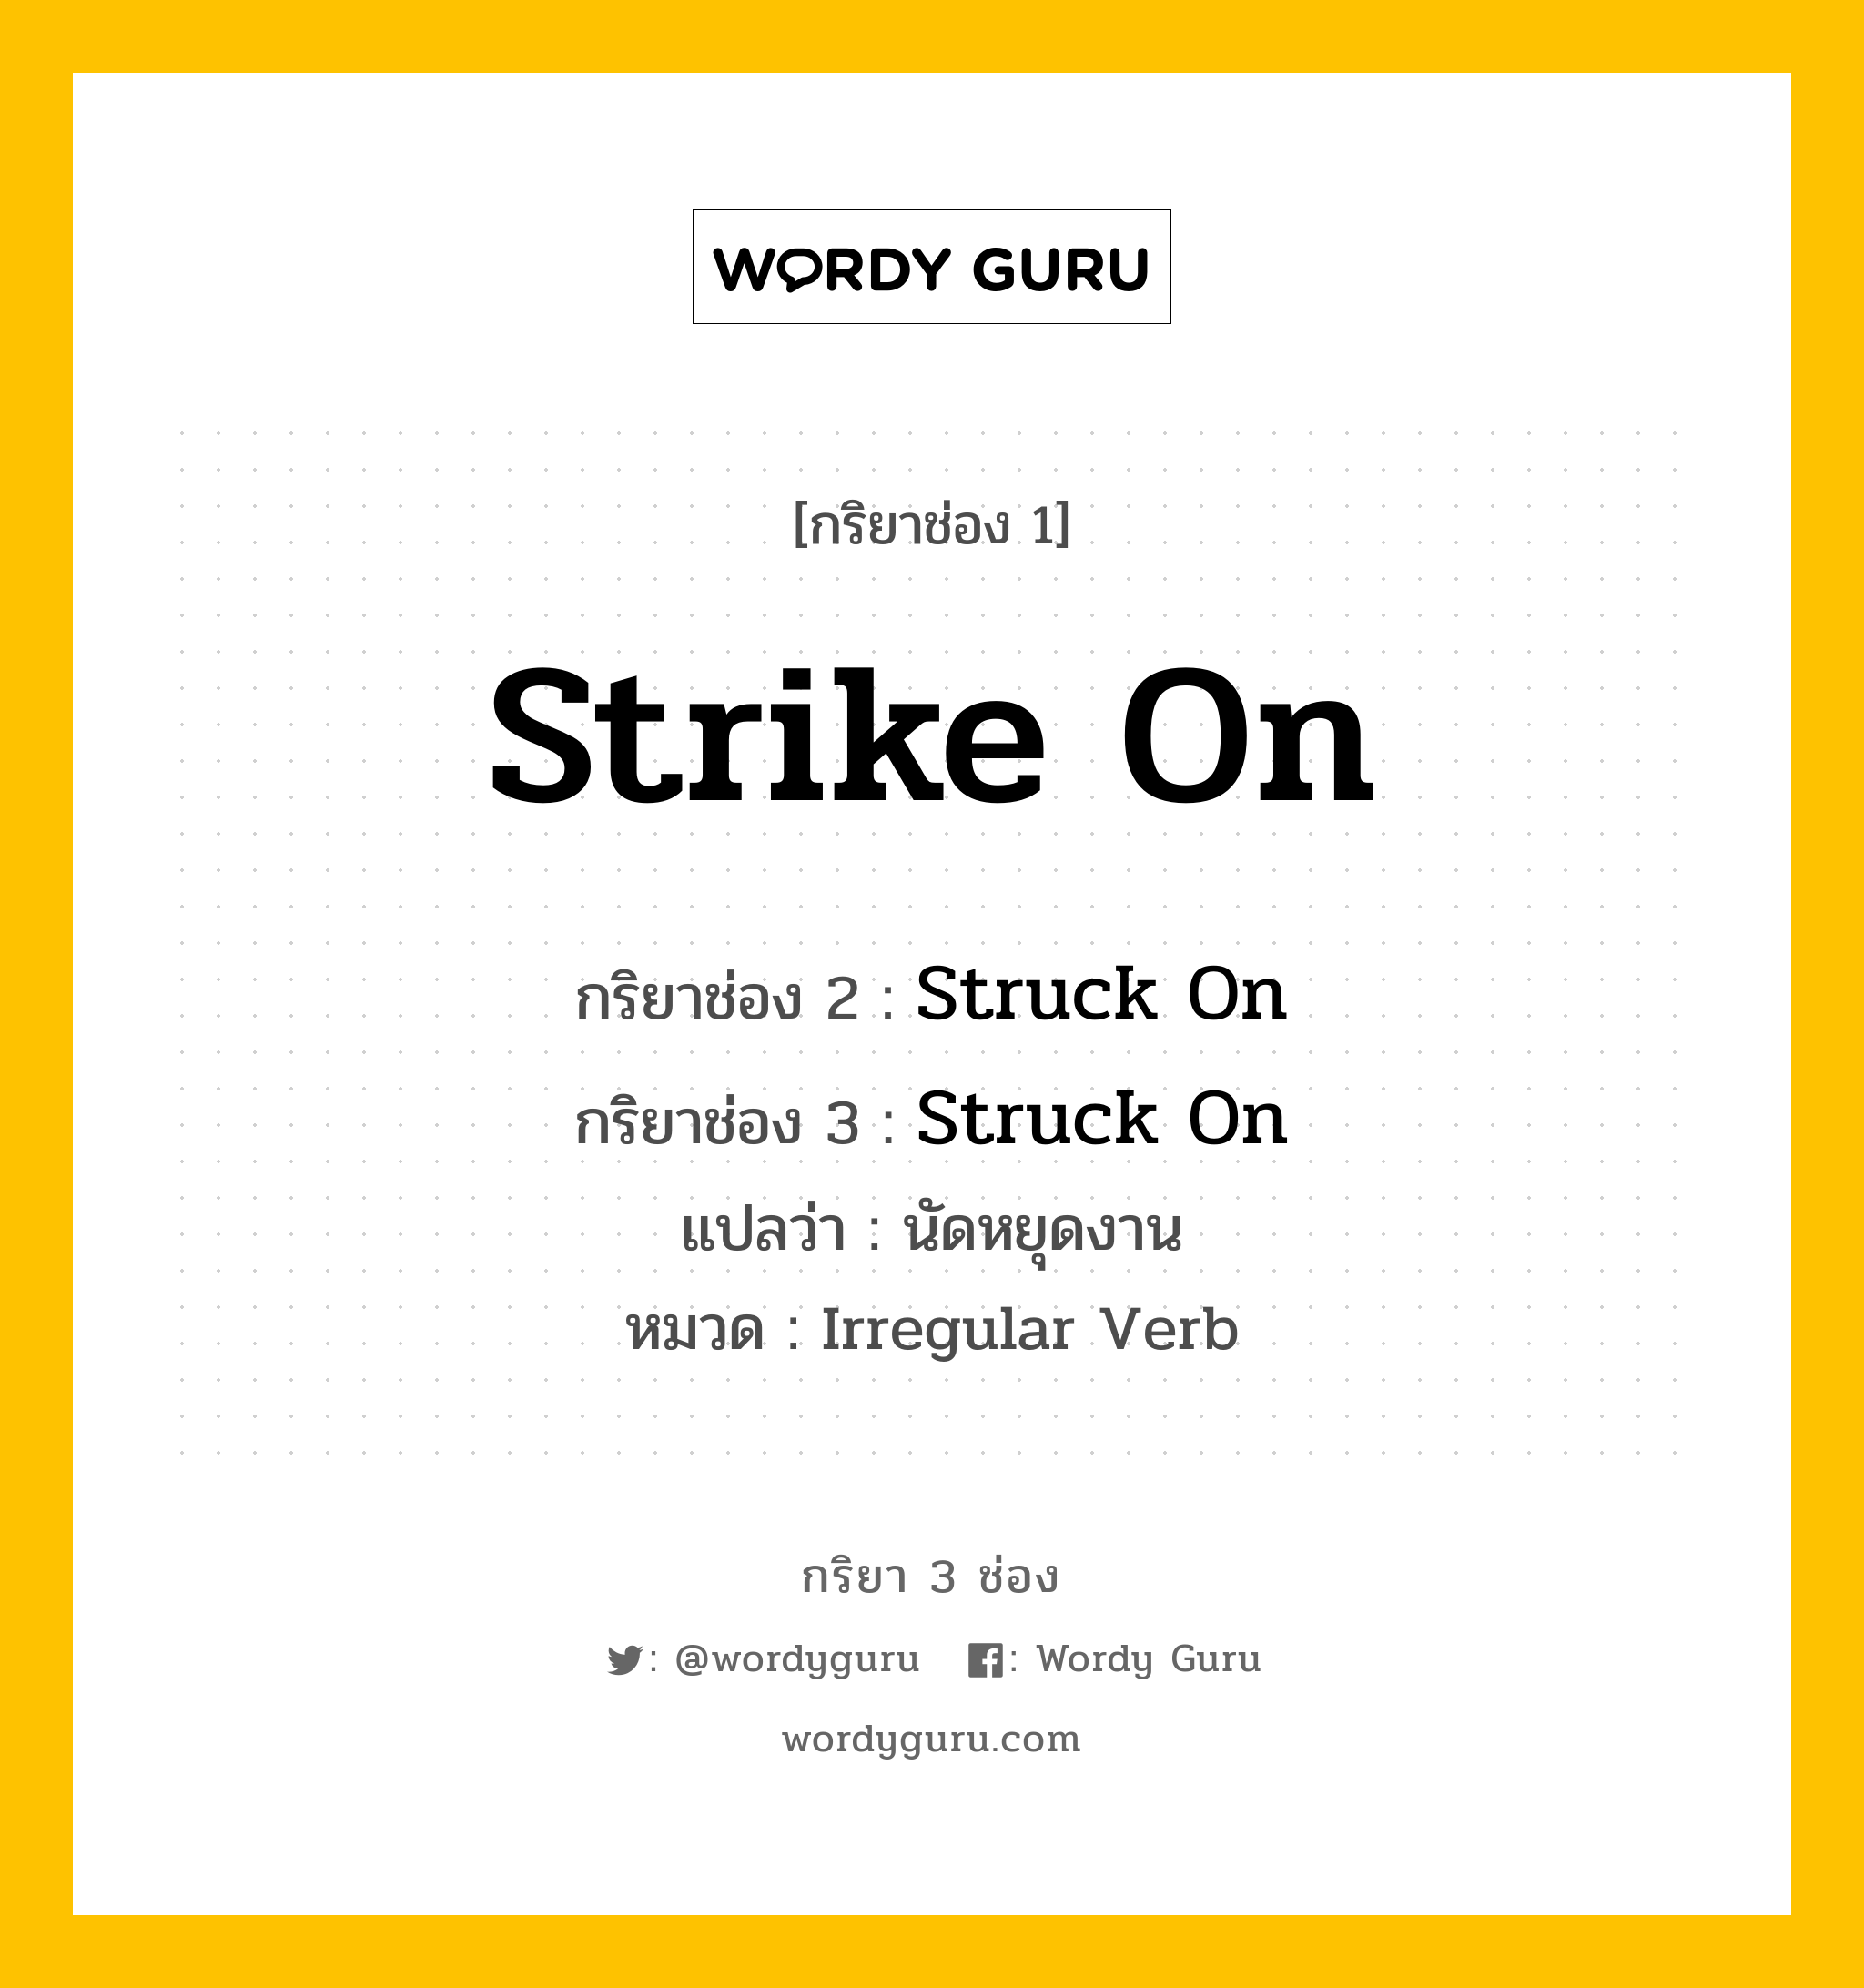 กริยา 3 ช่อง: Strike On ช่อง 2 Strike On ช่อง 3 คืออะไร, กริยาช่อง 1 Strike On กริยาช่อง 2 Struck On กริยาช่อง 3 Struck On แปลว่า นัดหยุดงาน หมวด Irregular Verb หมวด Irregular Verb